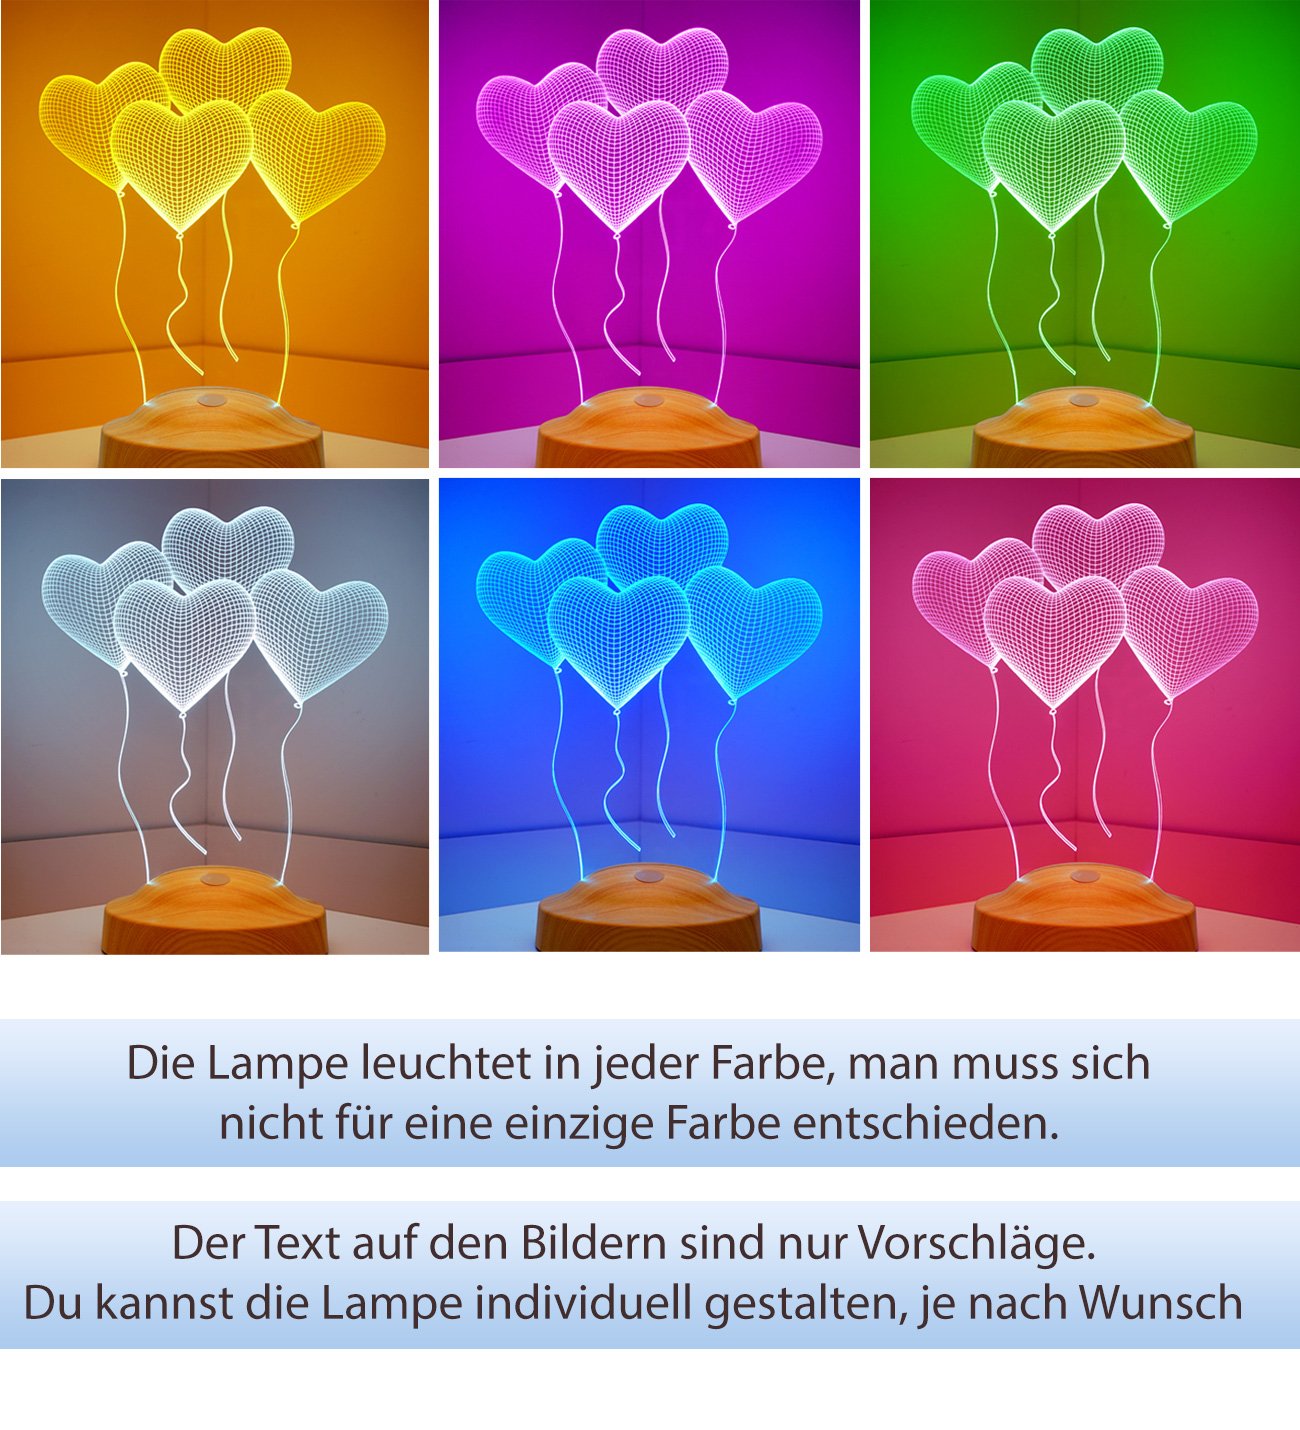 Vier Herzen Personalisierte Muttertags Geschenke Lampe mit Wunschtext